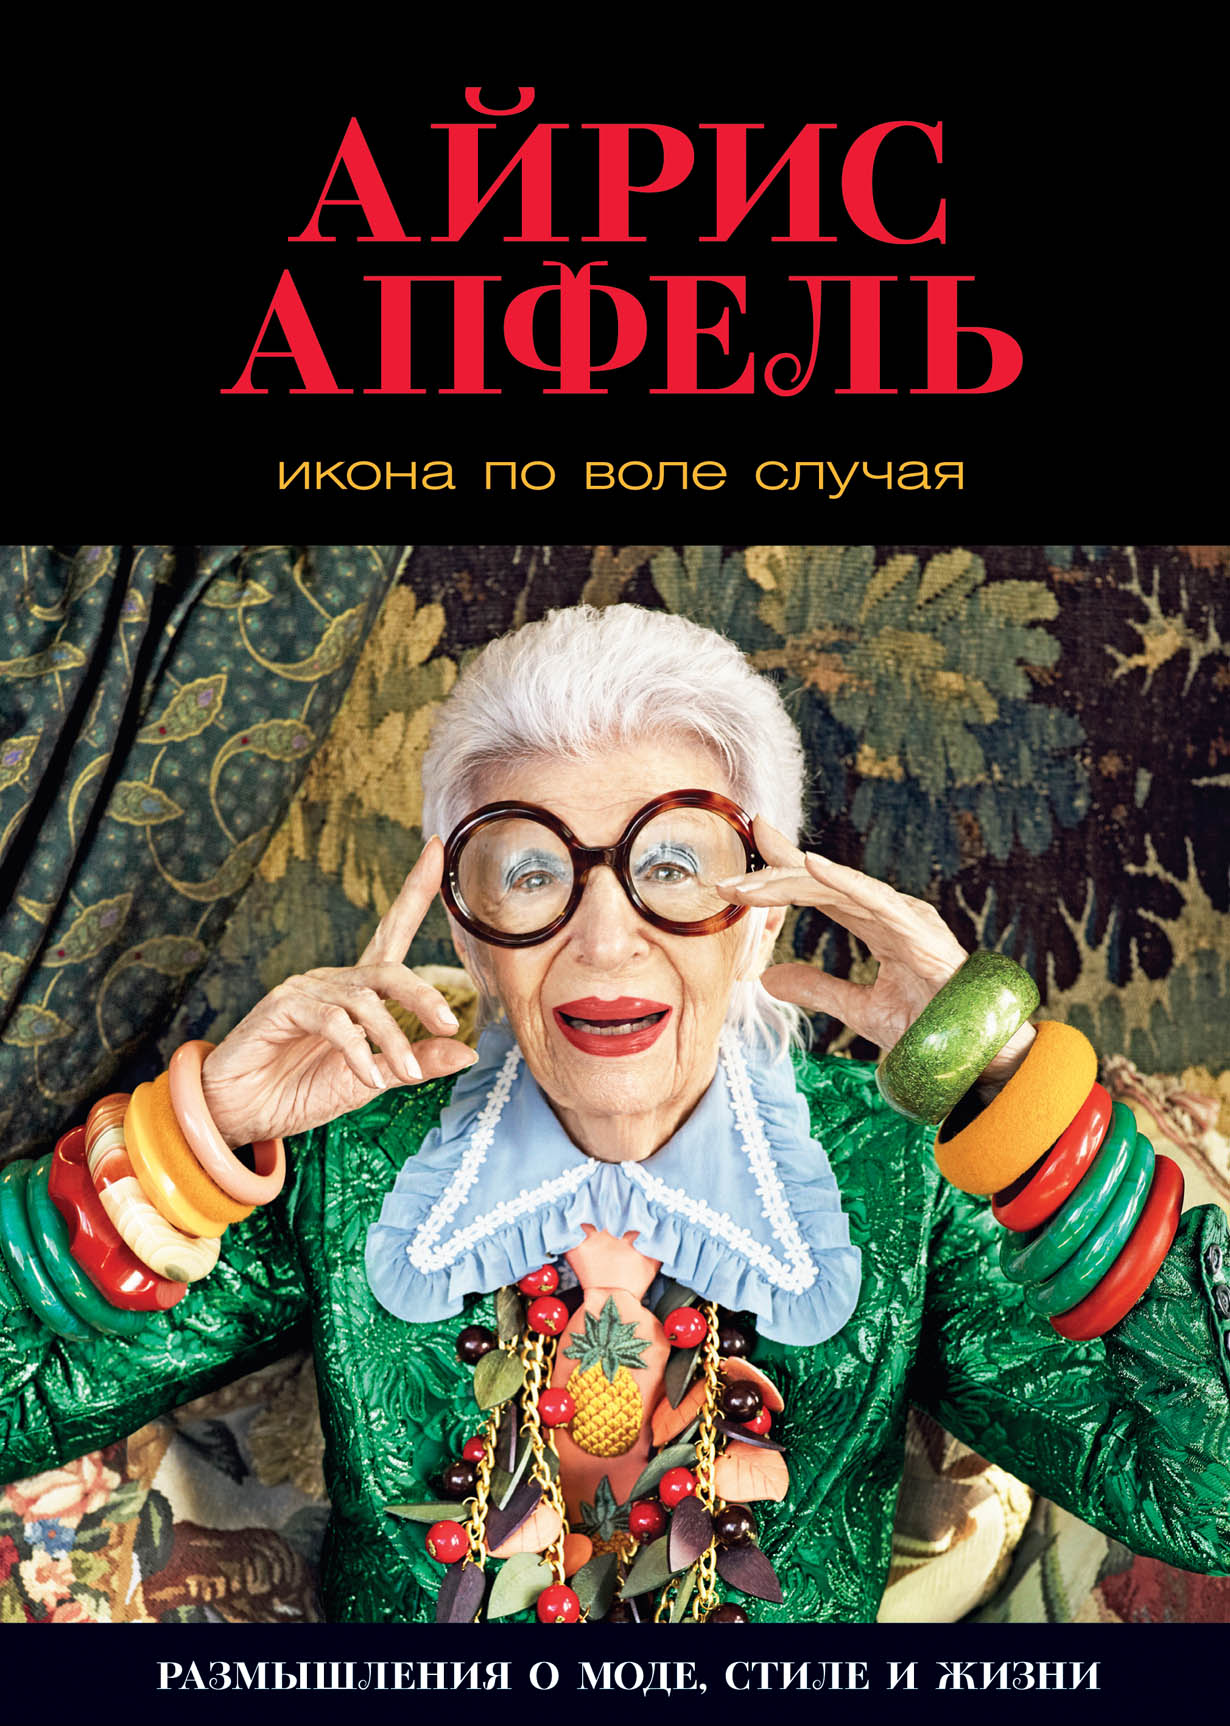 Икона по воле случая — купить книгу Айрис Апфель на сайте alpinabook.ru